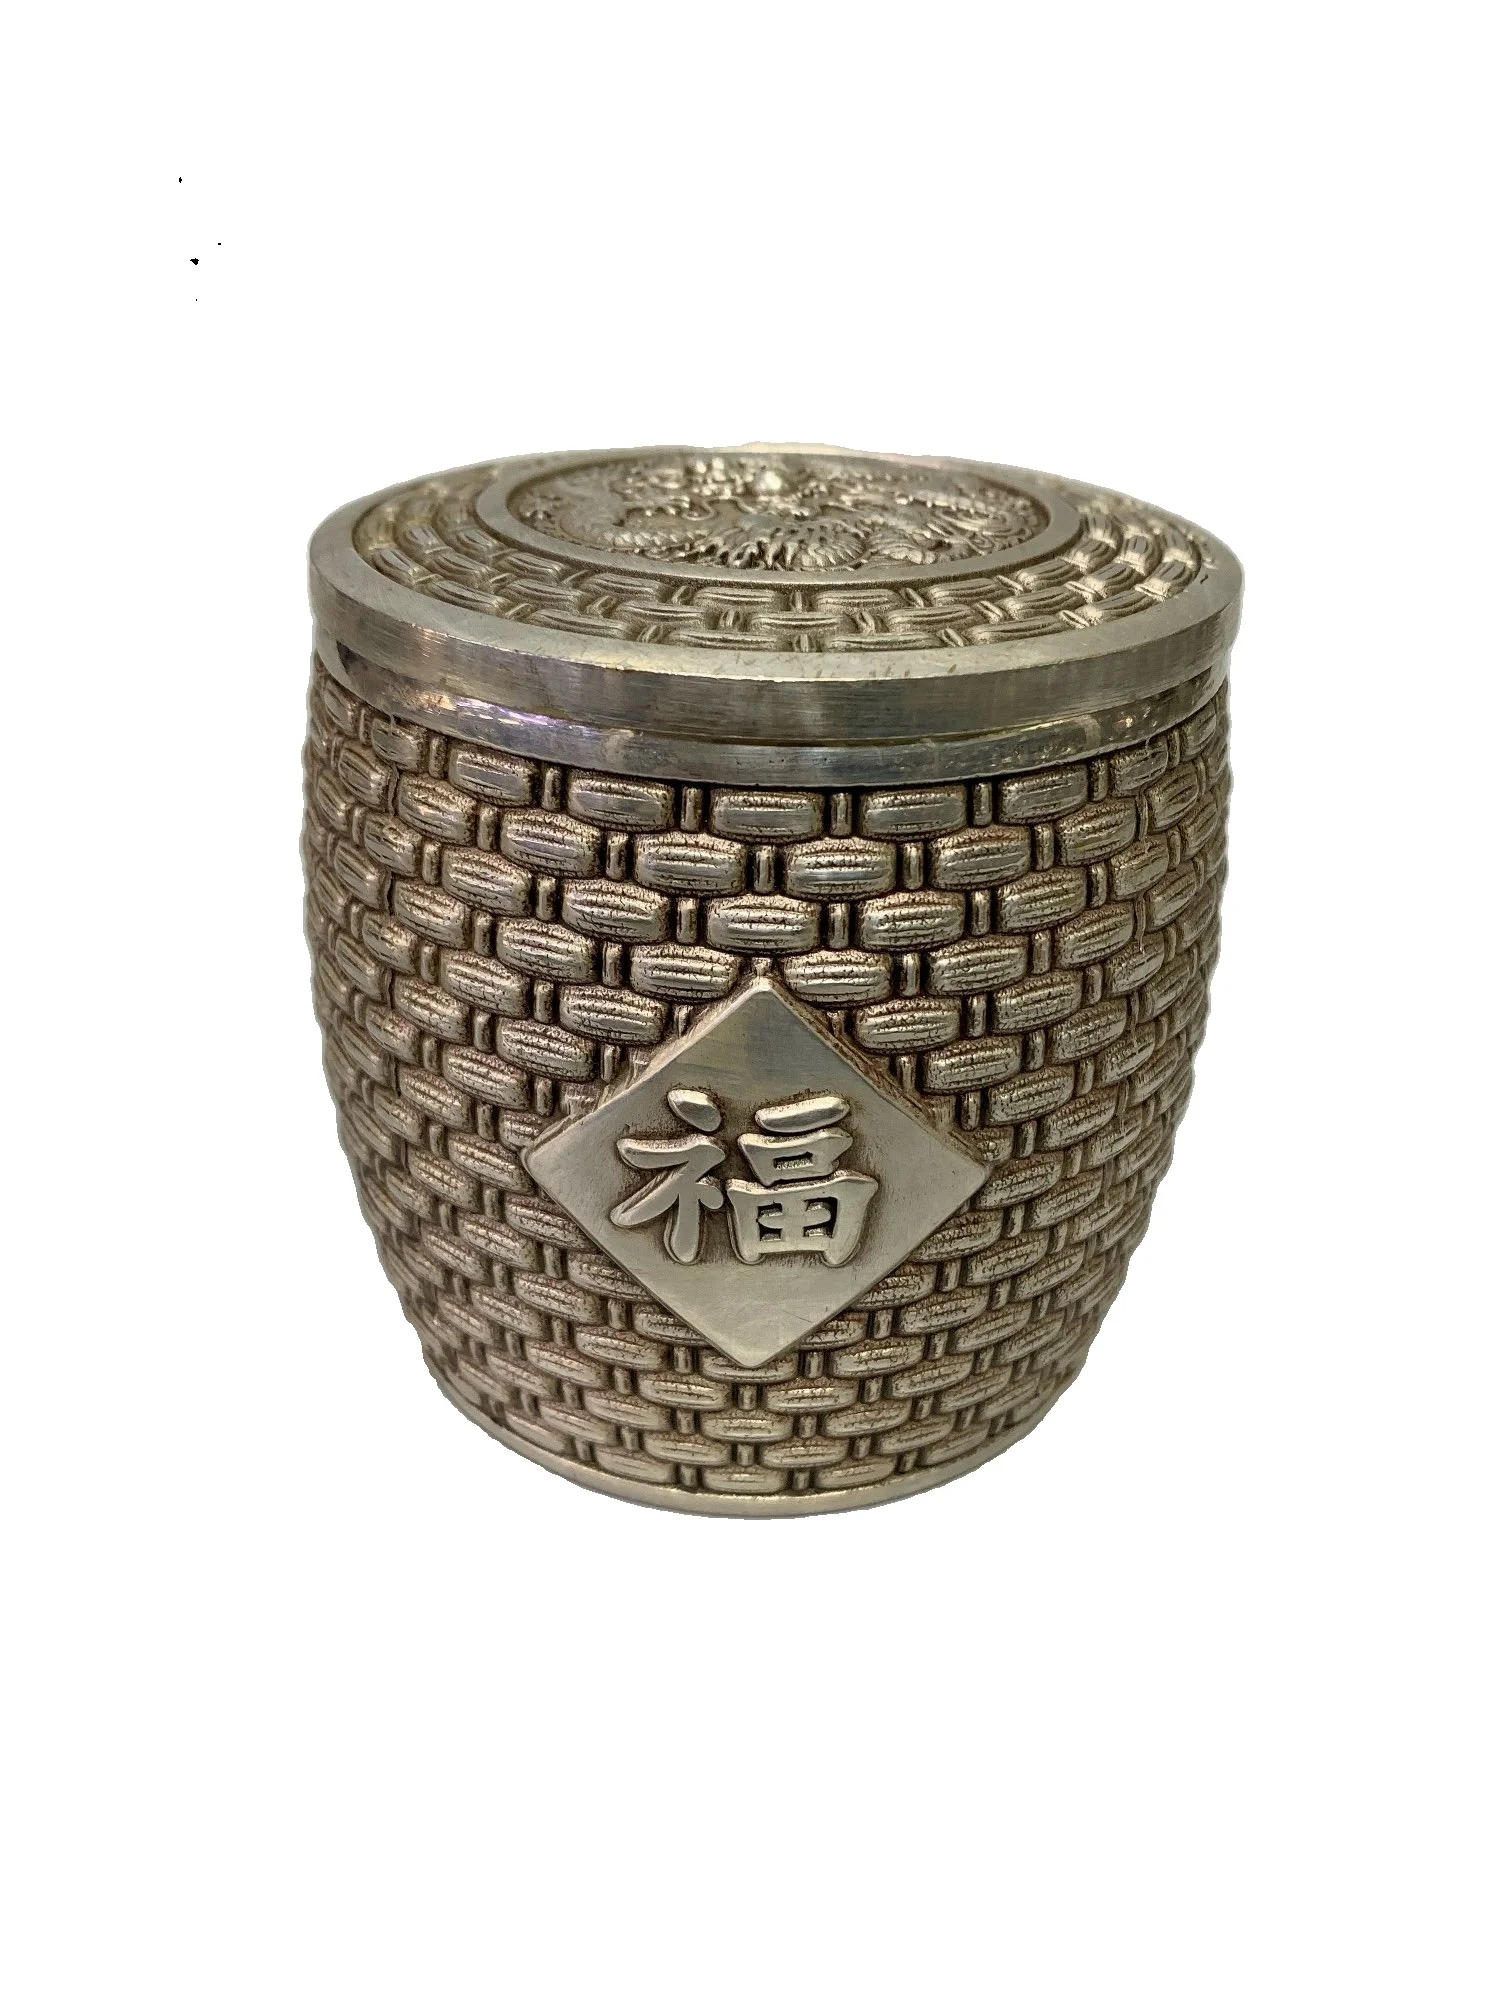 

Laojunlu белая медная кастрюля удачи античный бронзовый шедевр Коллекция ювелирных изделий в традиционном китайском стиле